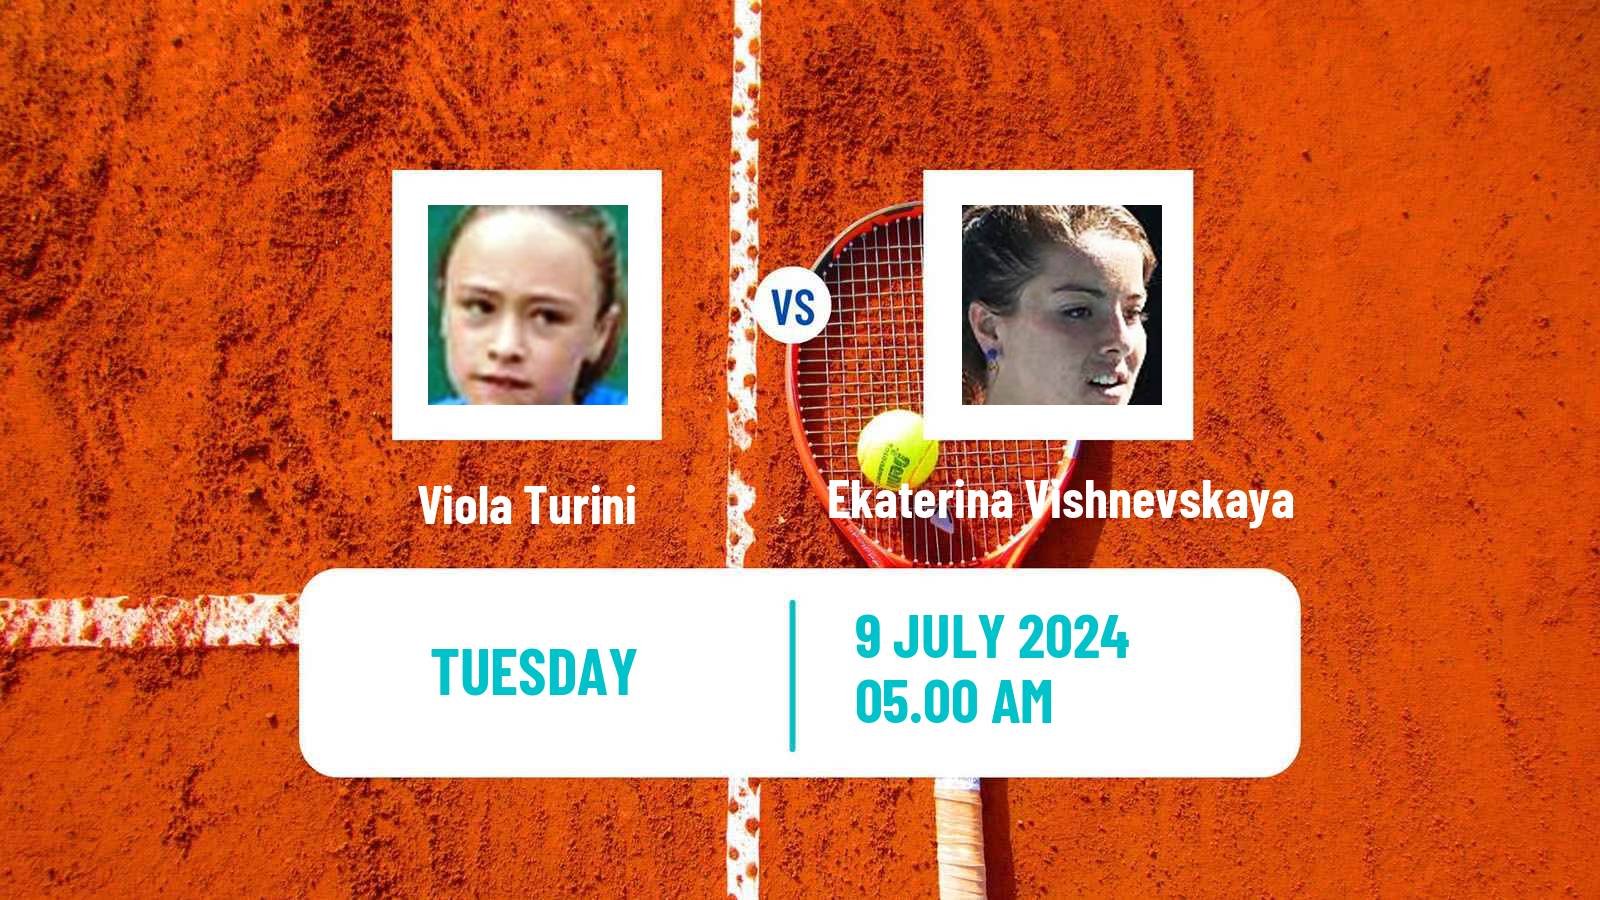 Tennis ITF W15 Bissy Chambery Women Viola Turini - Ekaterina Vishnevskaya